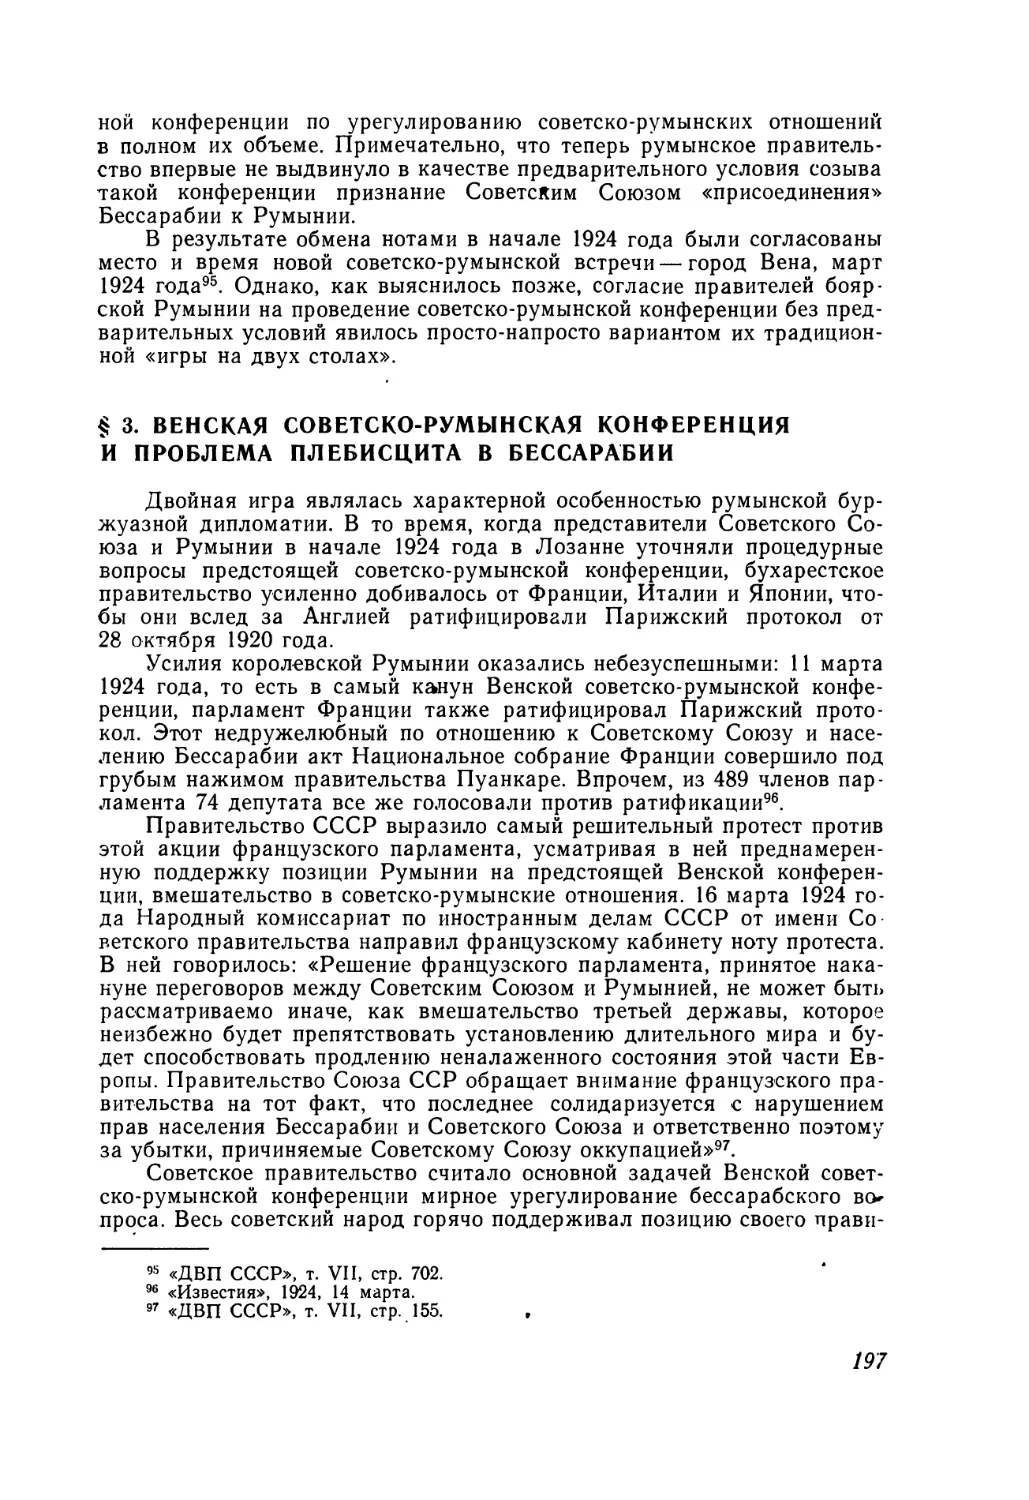 § 3. Венская советско-румынская конференция и проблема плебисцита в Бессарабии